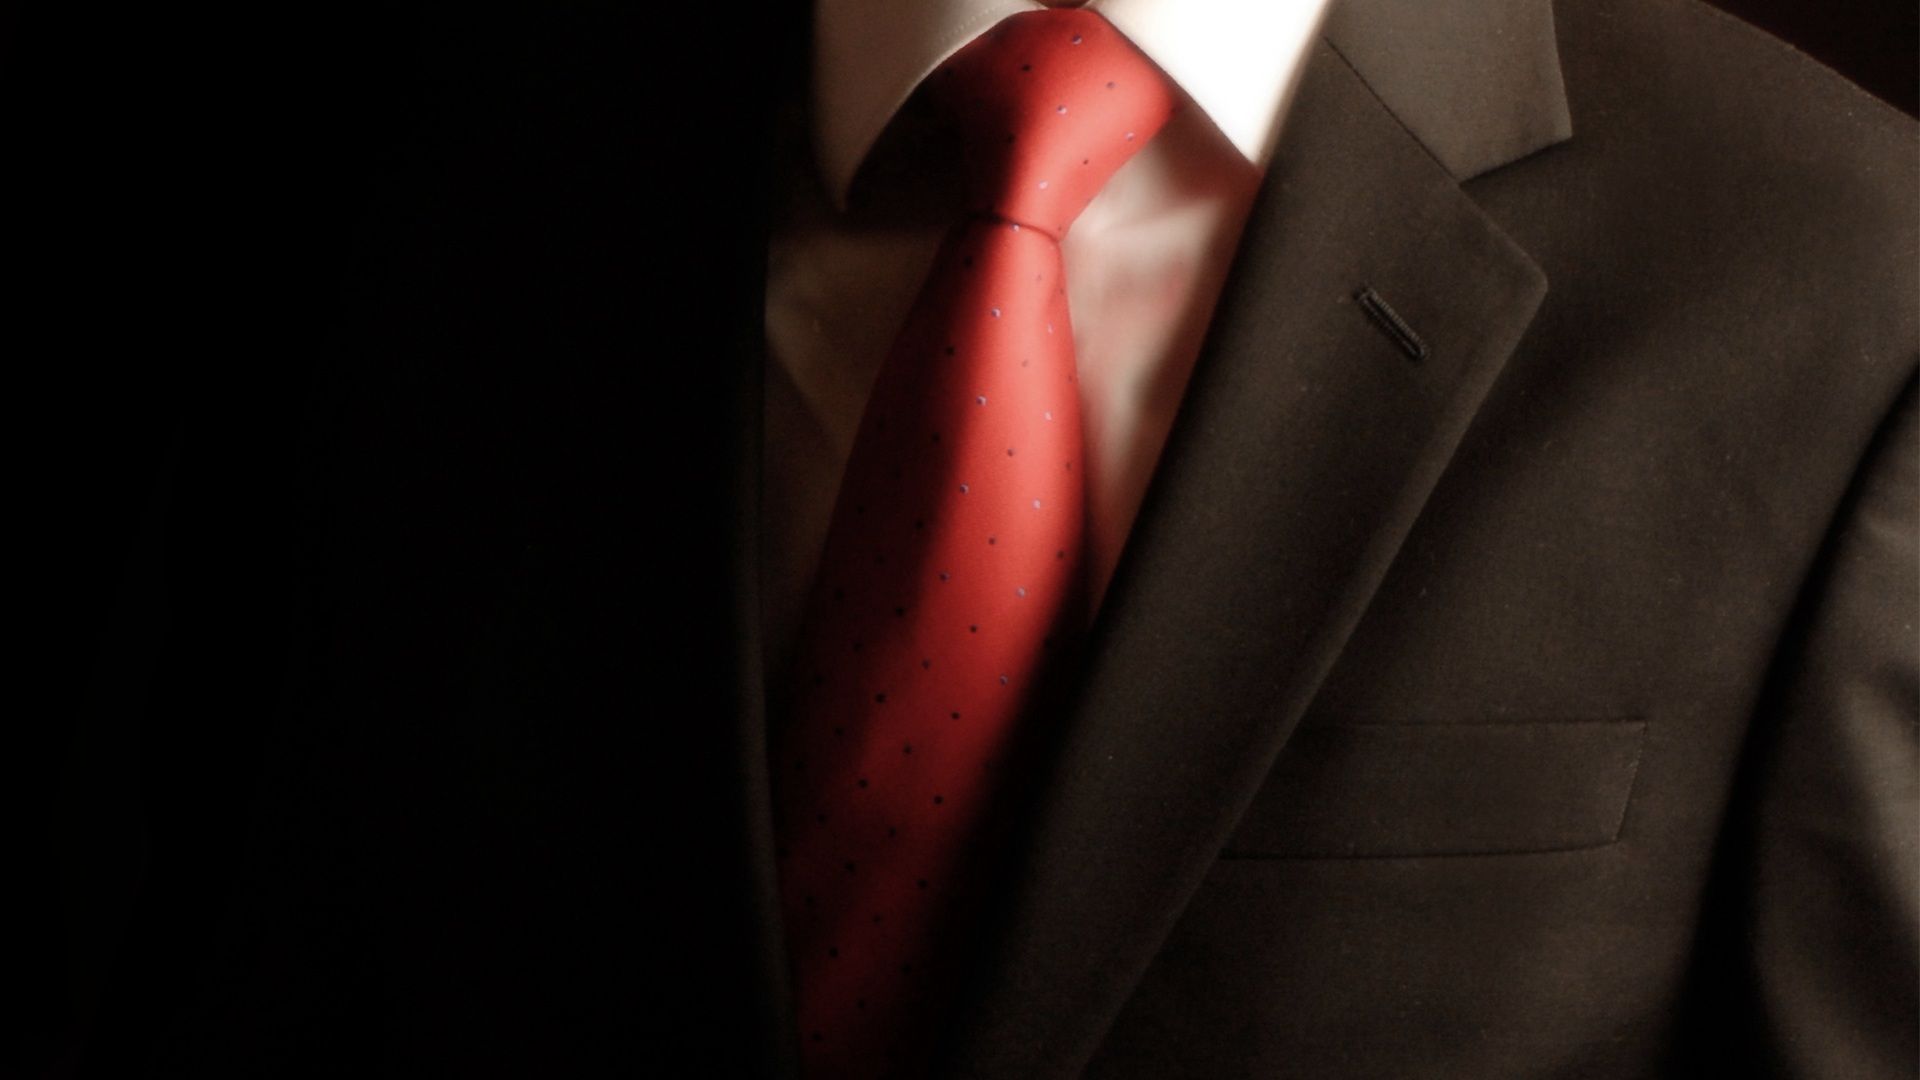 Free download Suit Tie Wallpaper 1920x1080 Suit Tie Men Hitman Tuxedo [1920x1080] for your Desktop, Mobile & Tablet. Explore Suits Wallpaper. Suits Wallpaper, Bathing Suits Wallpaper, Iron Man Suits Wallpaper